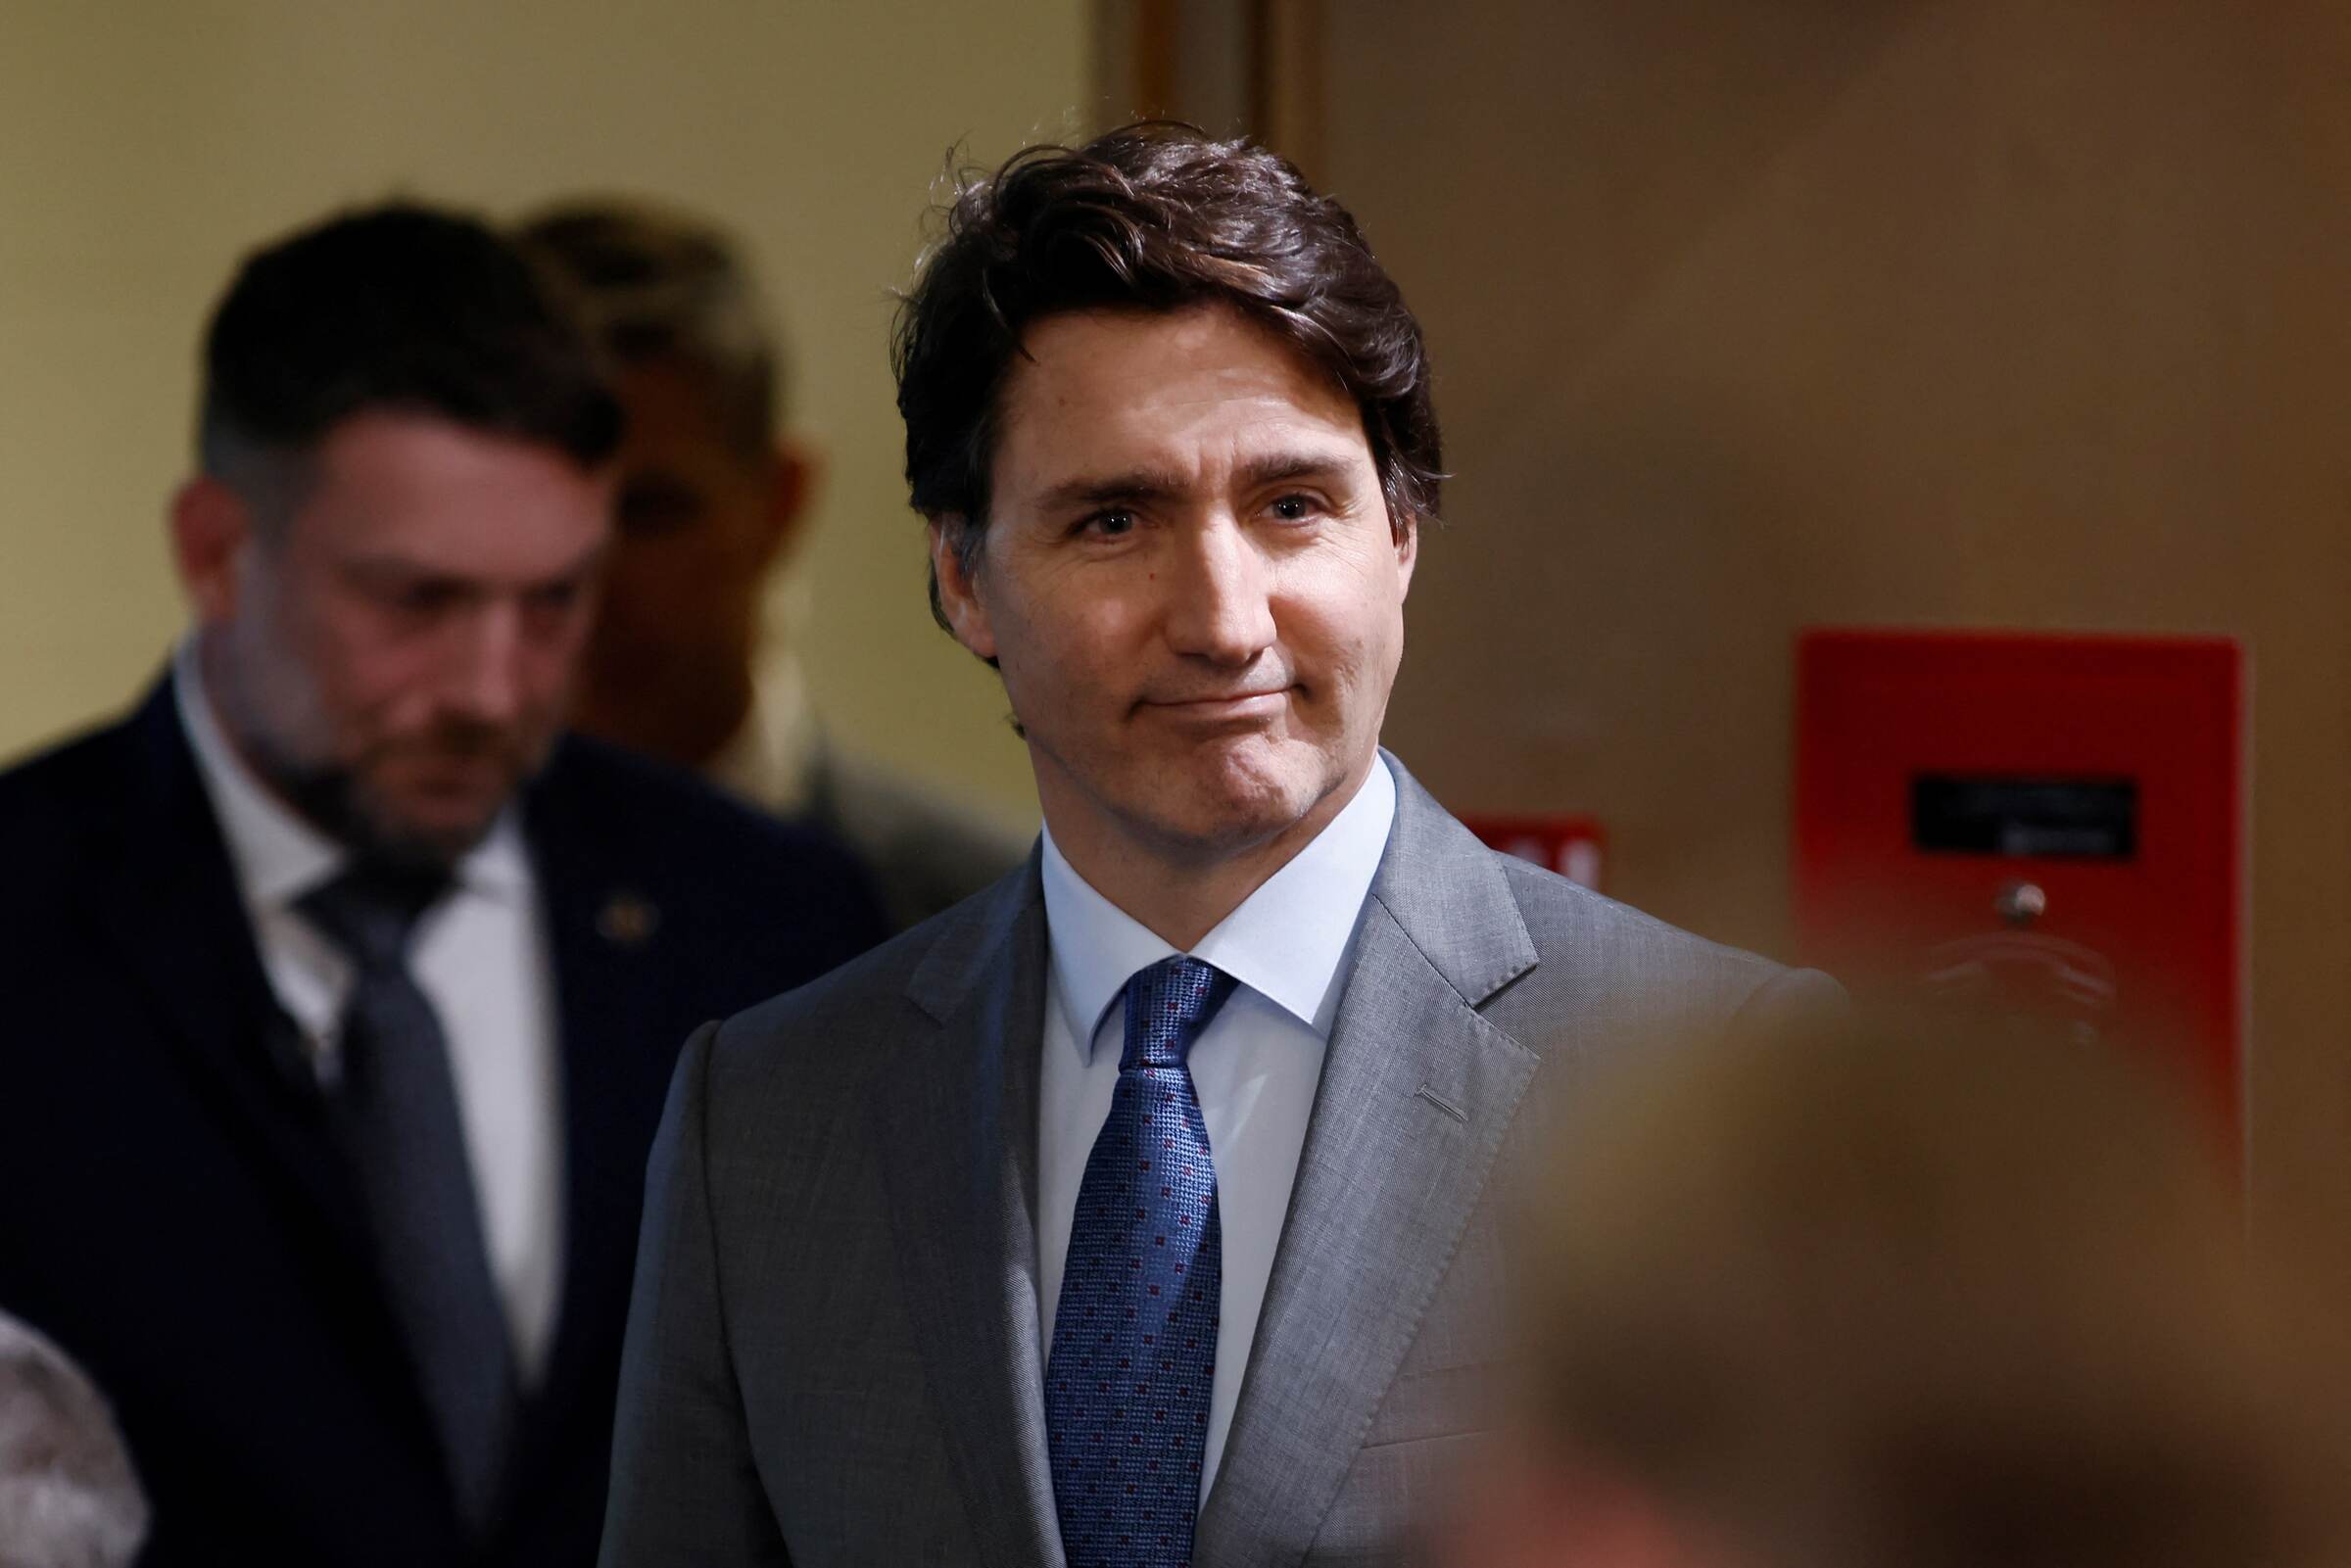 加拿大斥二度干预选举  中国反批“扣帽泼脏水”